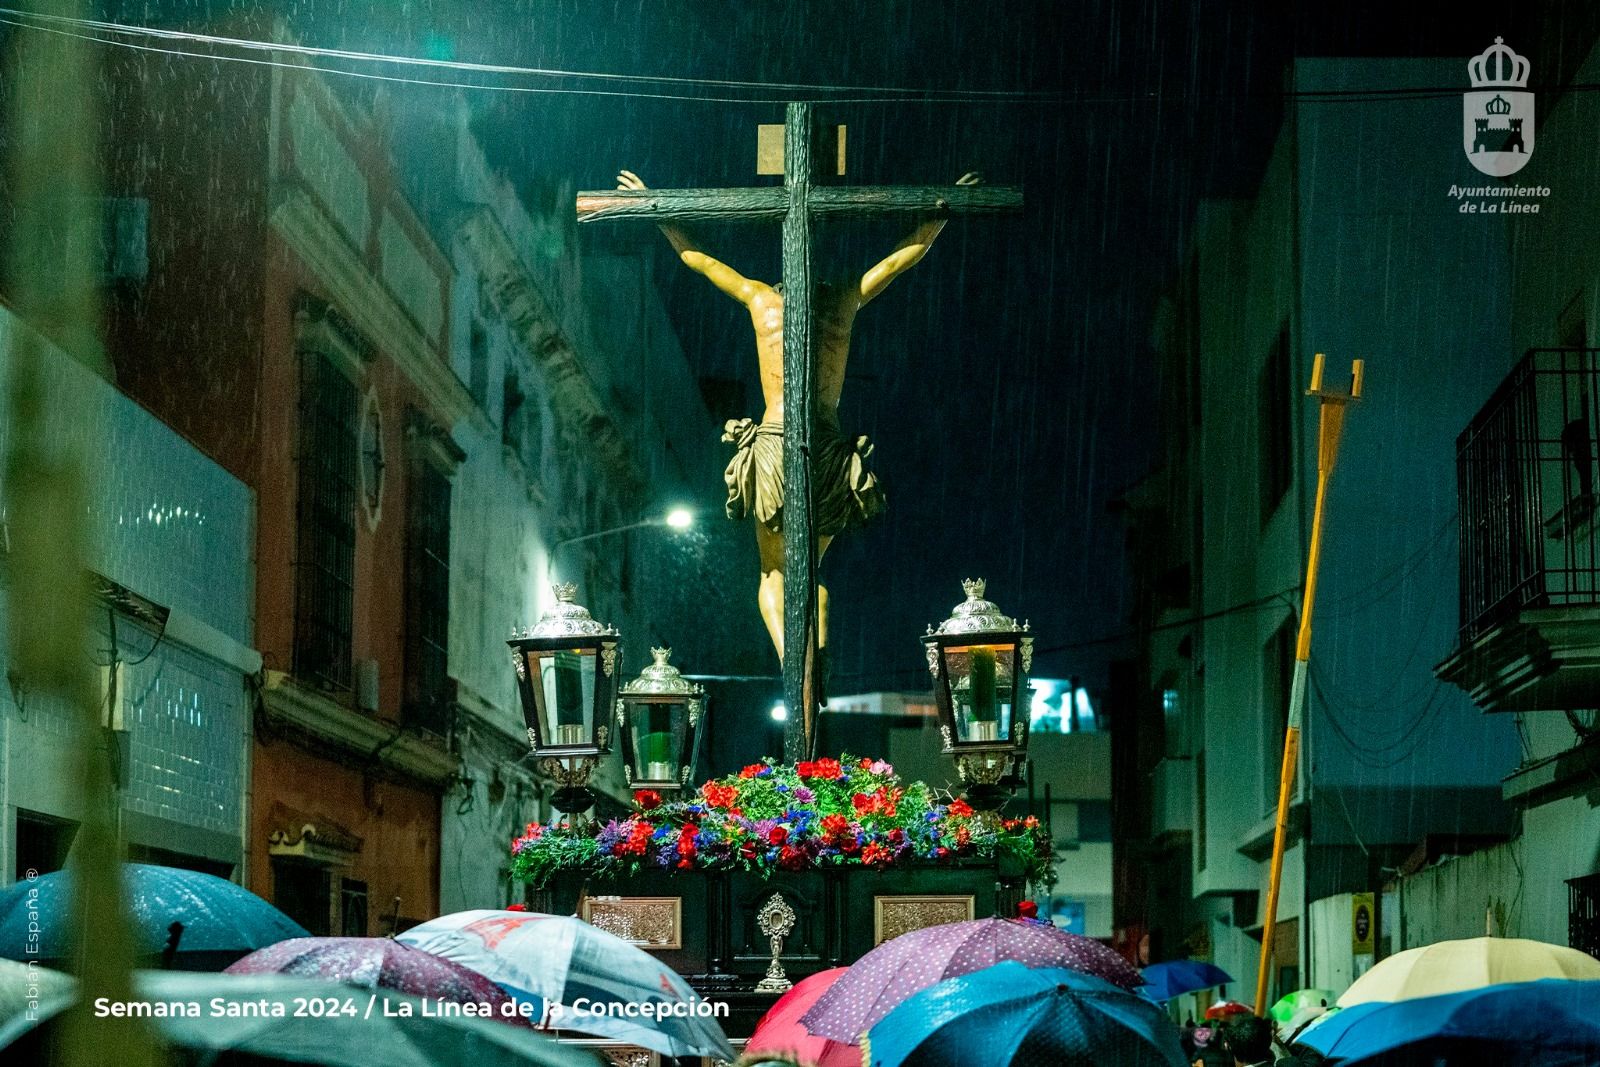 Franco lamenta las pérdidas económicas ocasionadas por la lluvia durante la Semana Santa.